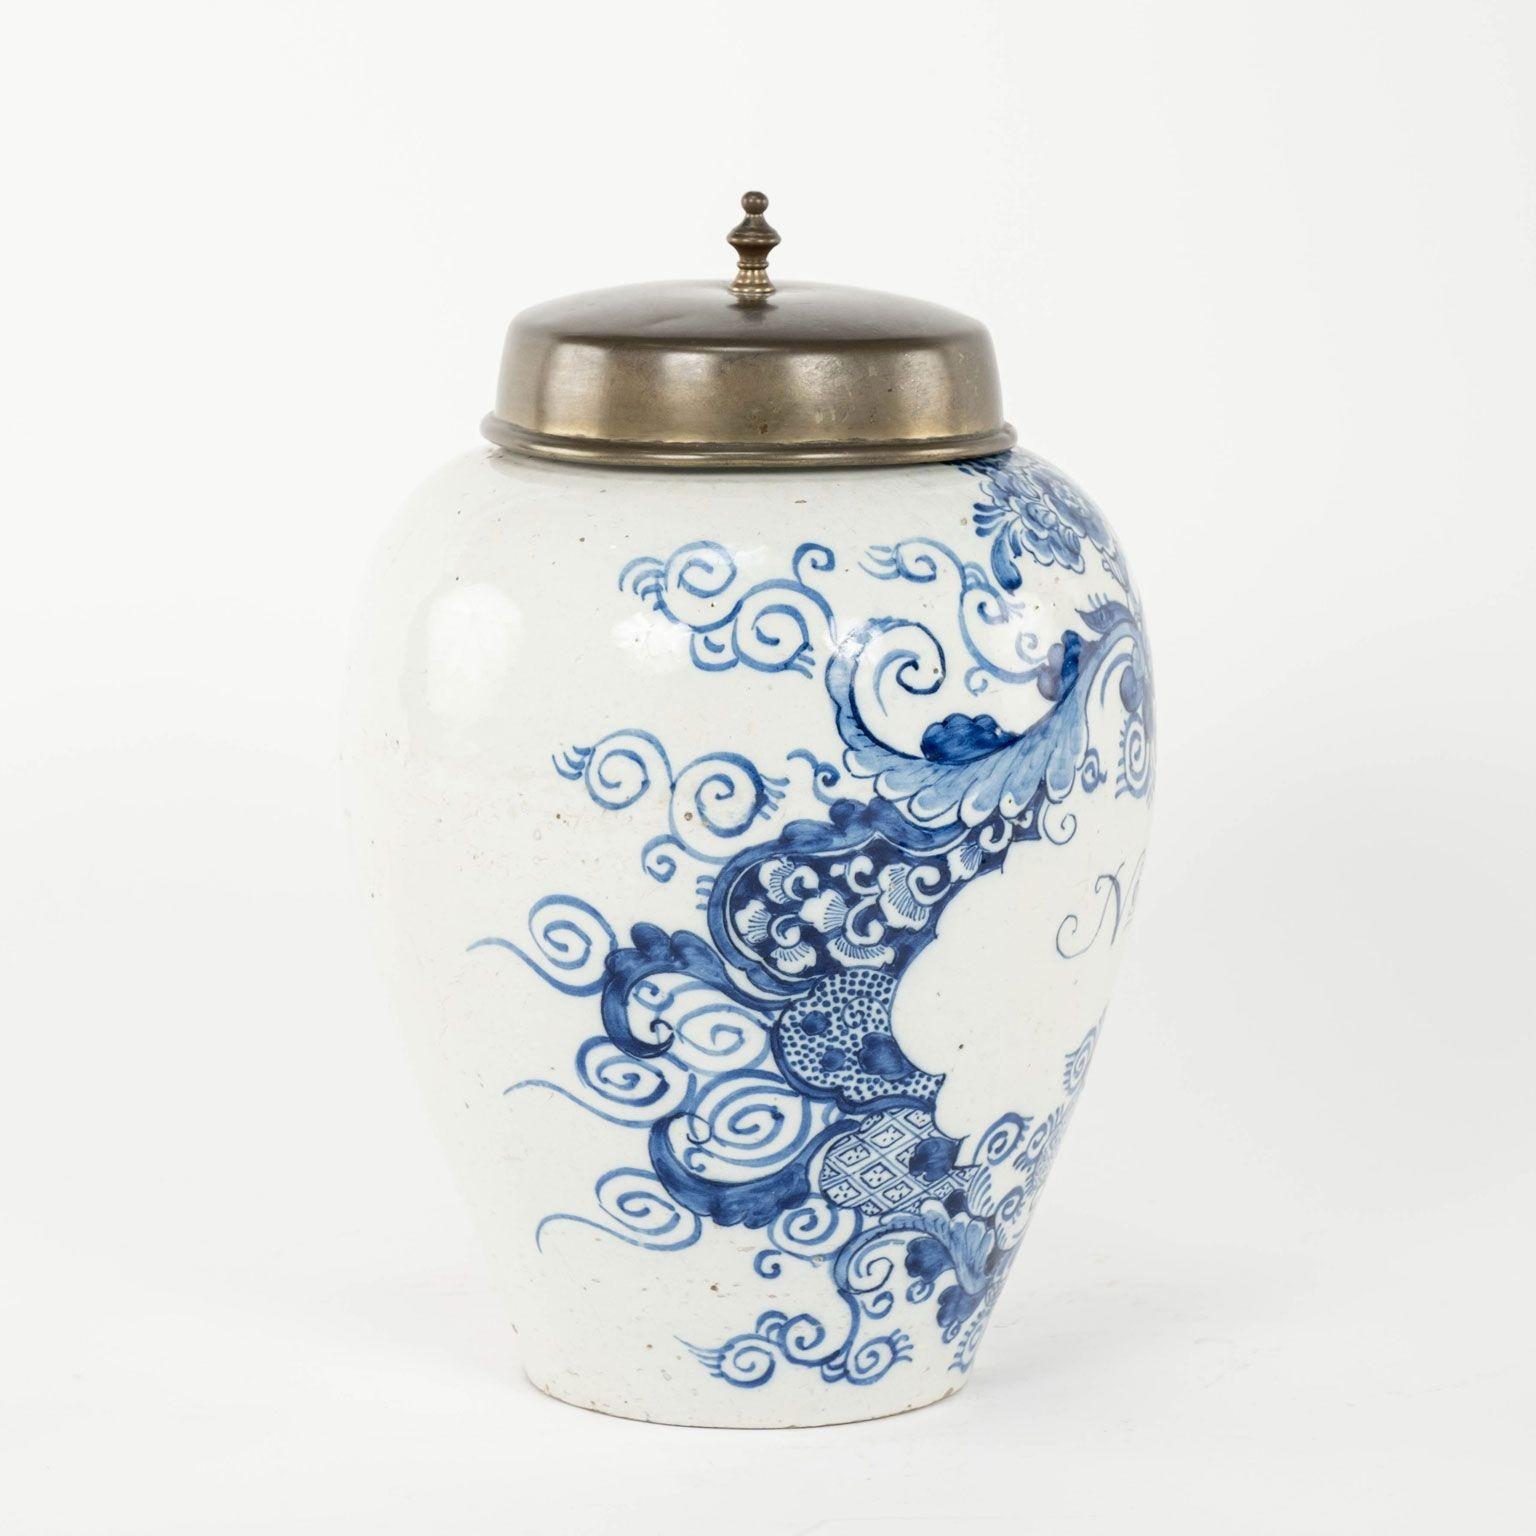 Pot à tabac No 8 en bleu et blanc de Delft vers 1790-1809. Jarre en forme d'urne avec couvercle en laiton des Pays-Bas. En faïence avec un médaillon de feuilles peint en bleu et étiqueté 